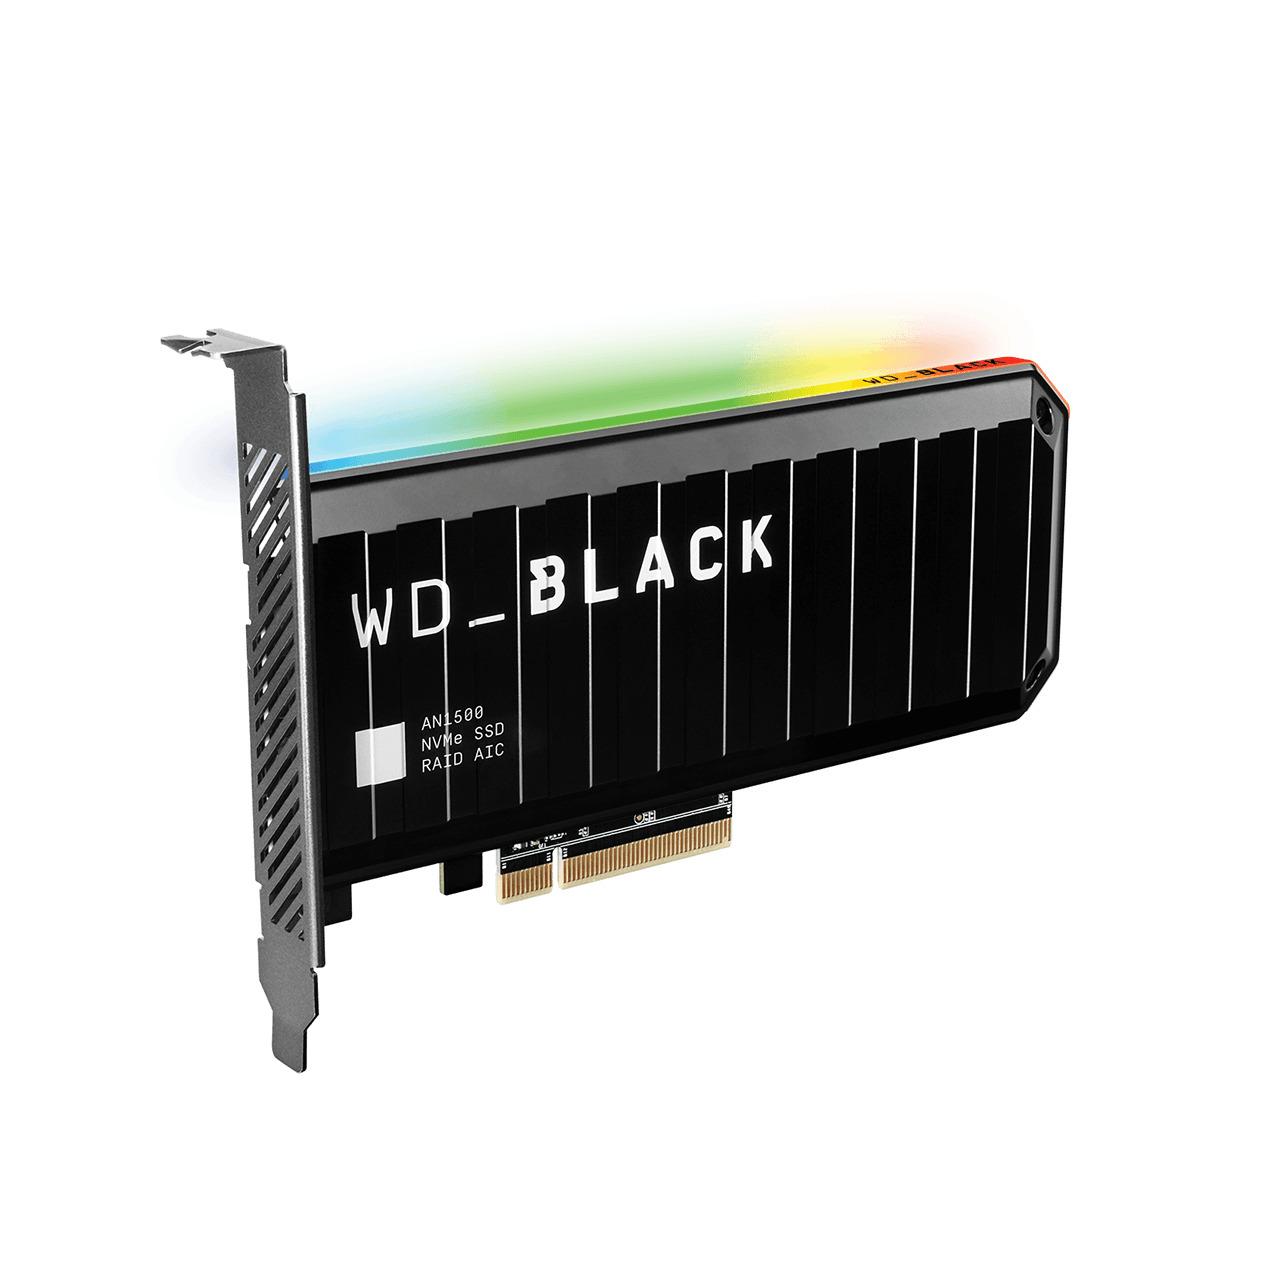 UNIDAD DE ESTADO SOLIDO SSD INTERNO WD BLACK AN1500 1TB M.2 2280 NVME PCIE GEN3 X8 LECT.6500MBS ESCRIT.4100MBS GAMER DISIPADOR RGB - WDS100T1X0L